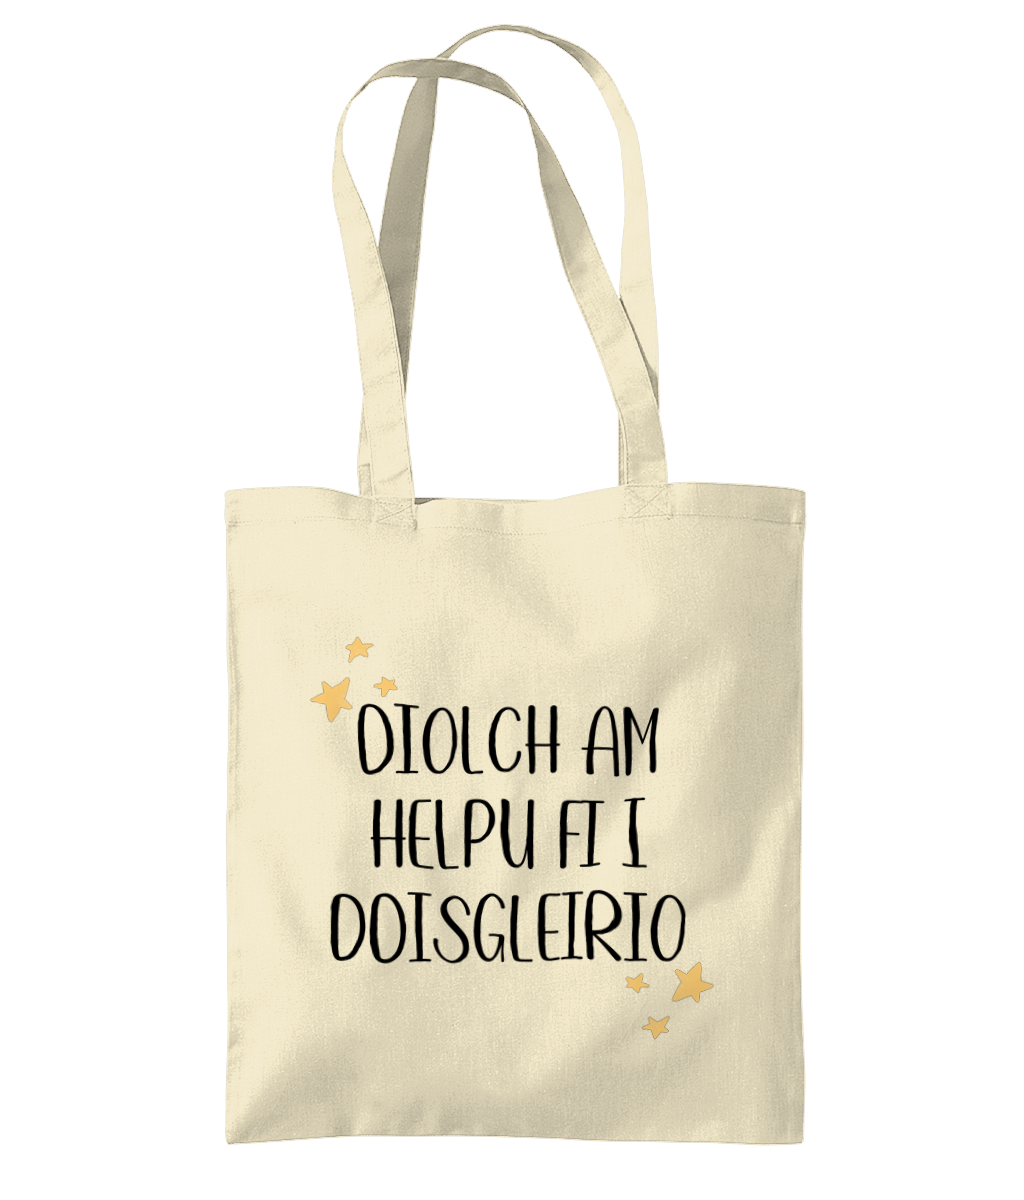 'Diolch am helpu fi i ddisgleirio' Printed Tote Bag